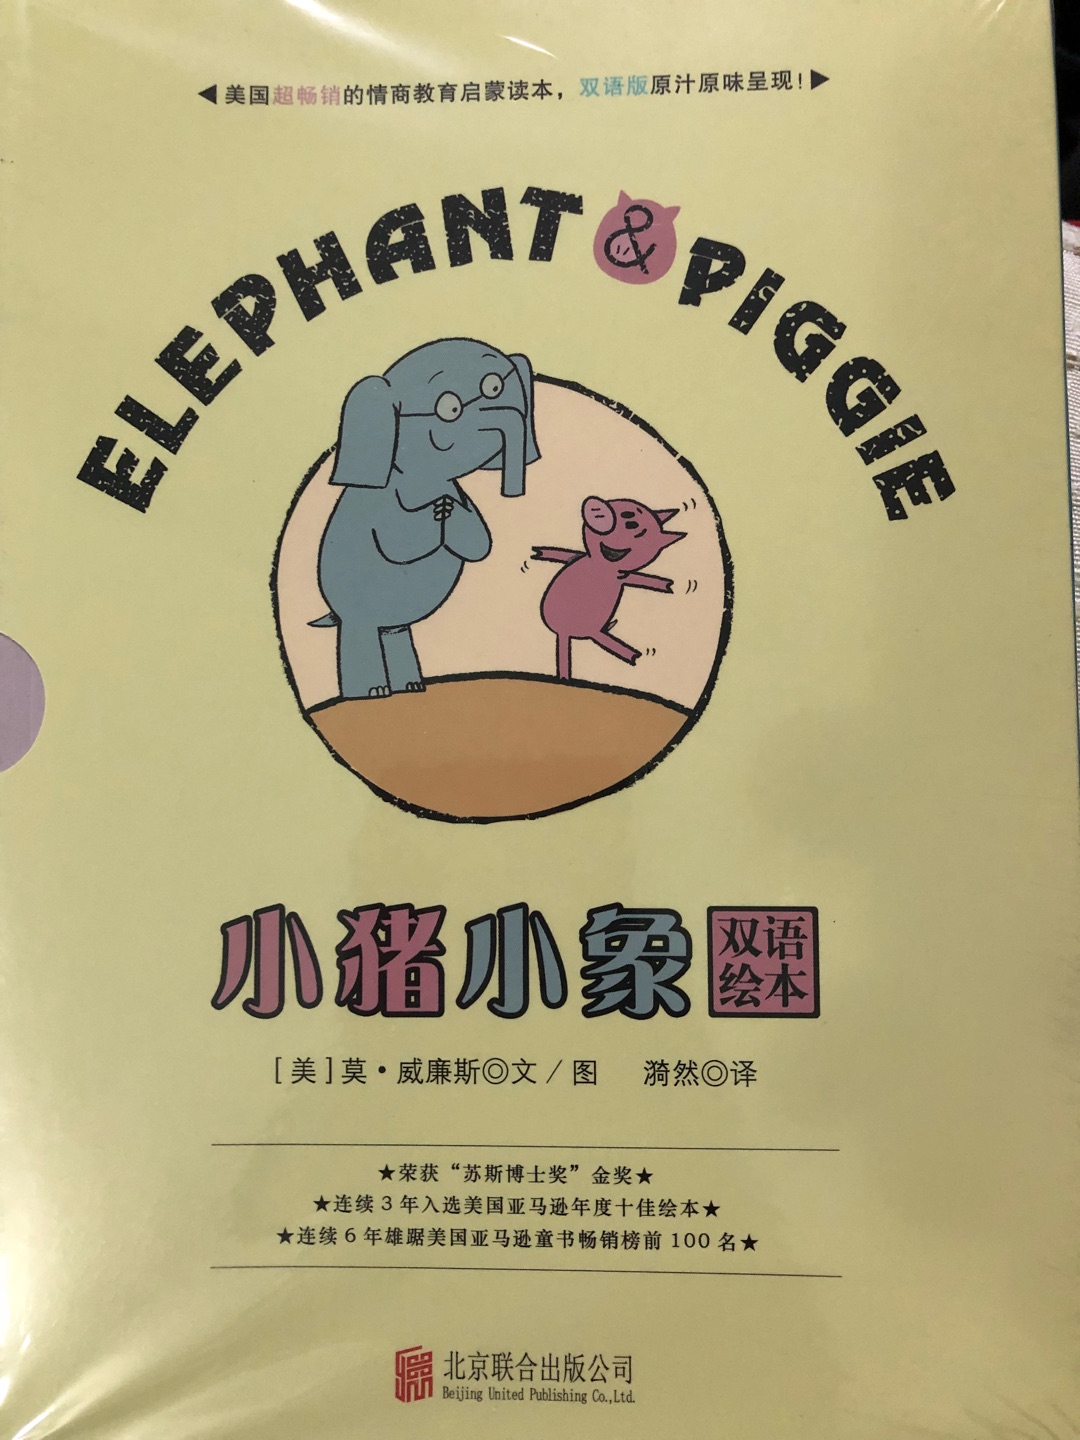 经典绘本，可以当英文原版阅读，中文翻译在最后几页，宝宝爱看，家长也觉得故事有意思。